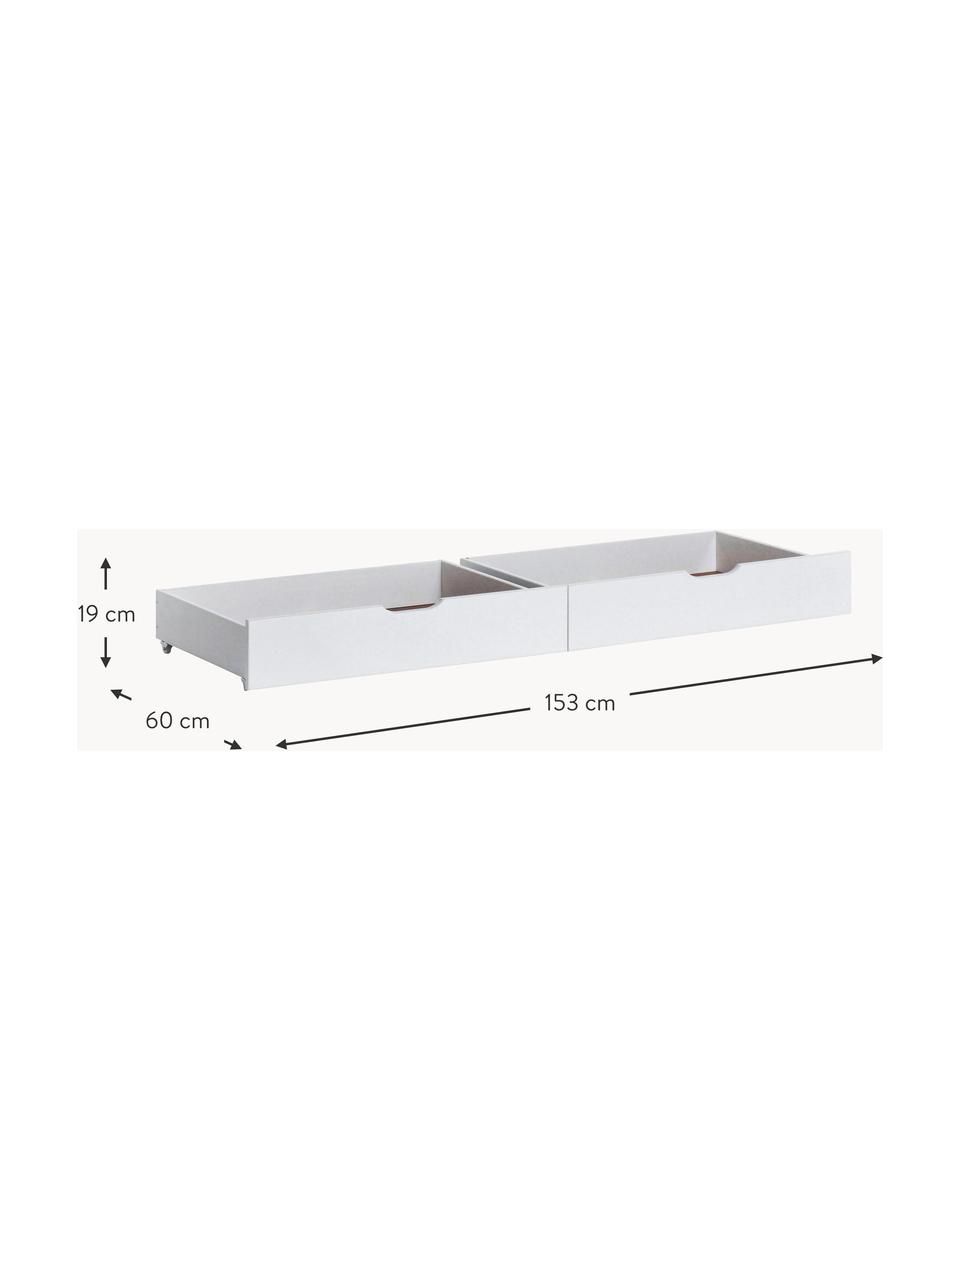 Bedschuifladen Eco Comfort, 2 stuks, MDF, FSC-gecertificeerd, Hout, wit gelakt, B 153 x D 60 cm